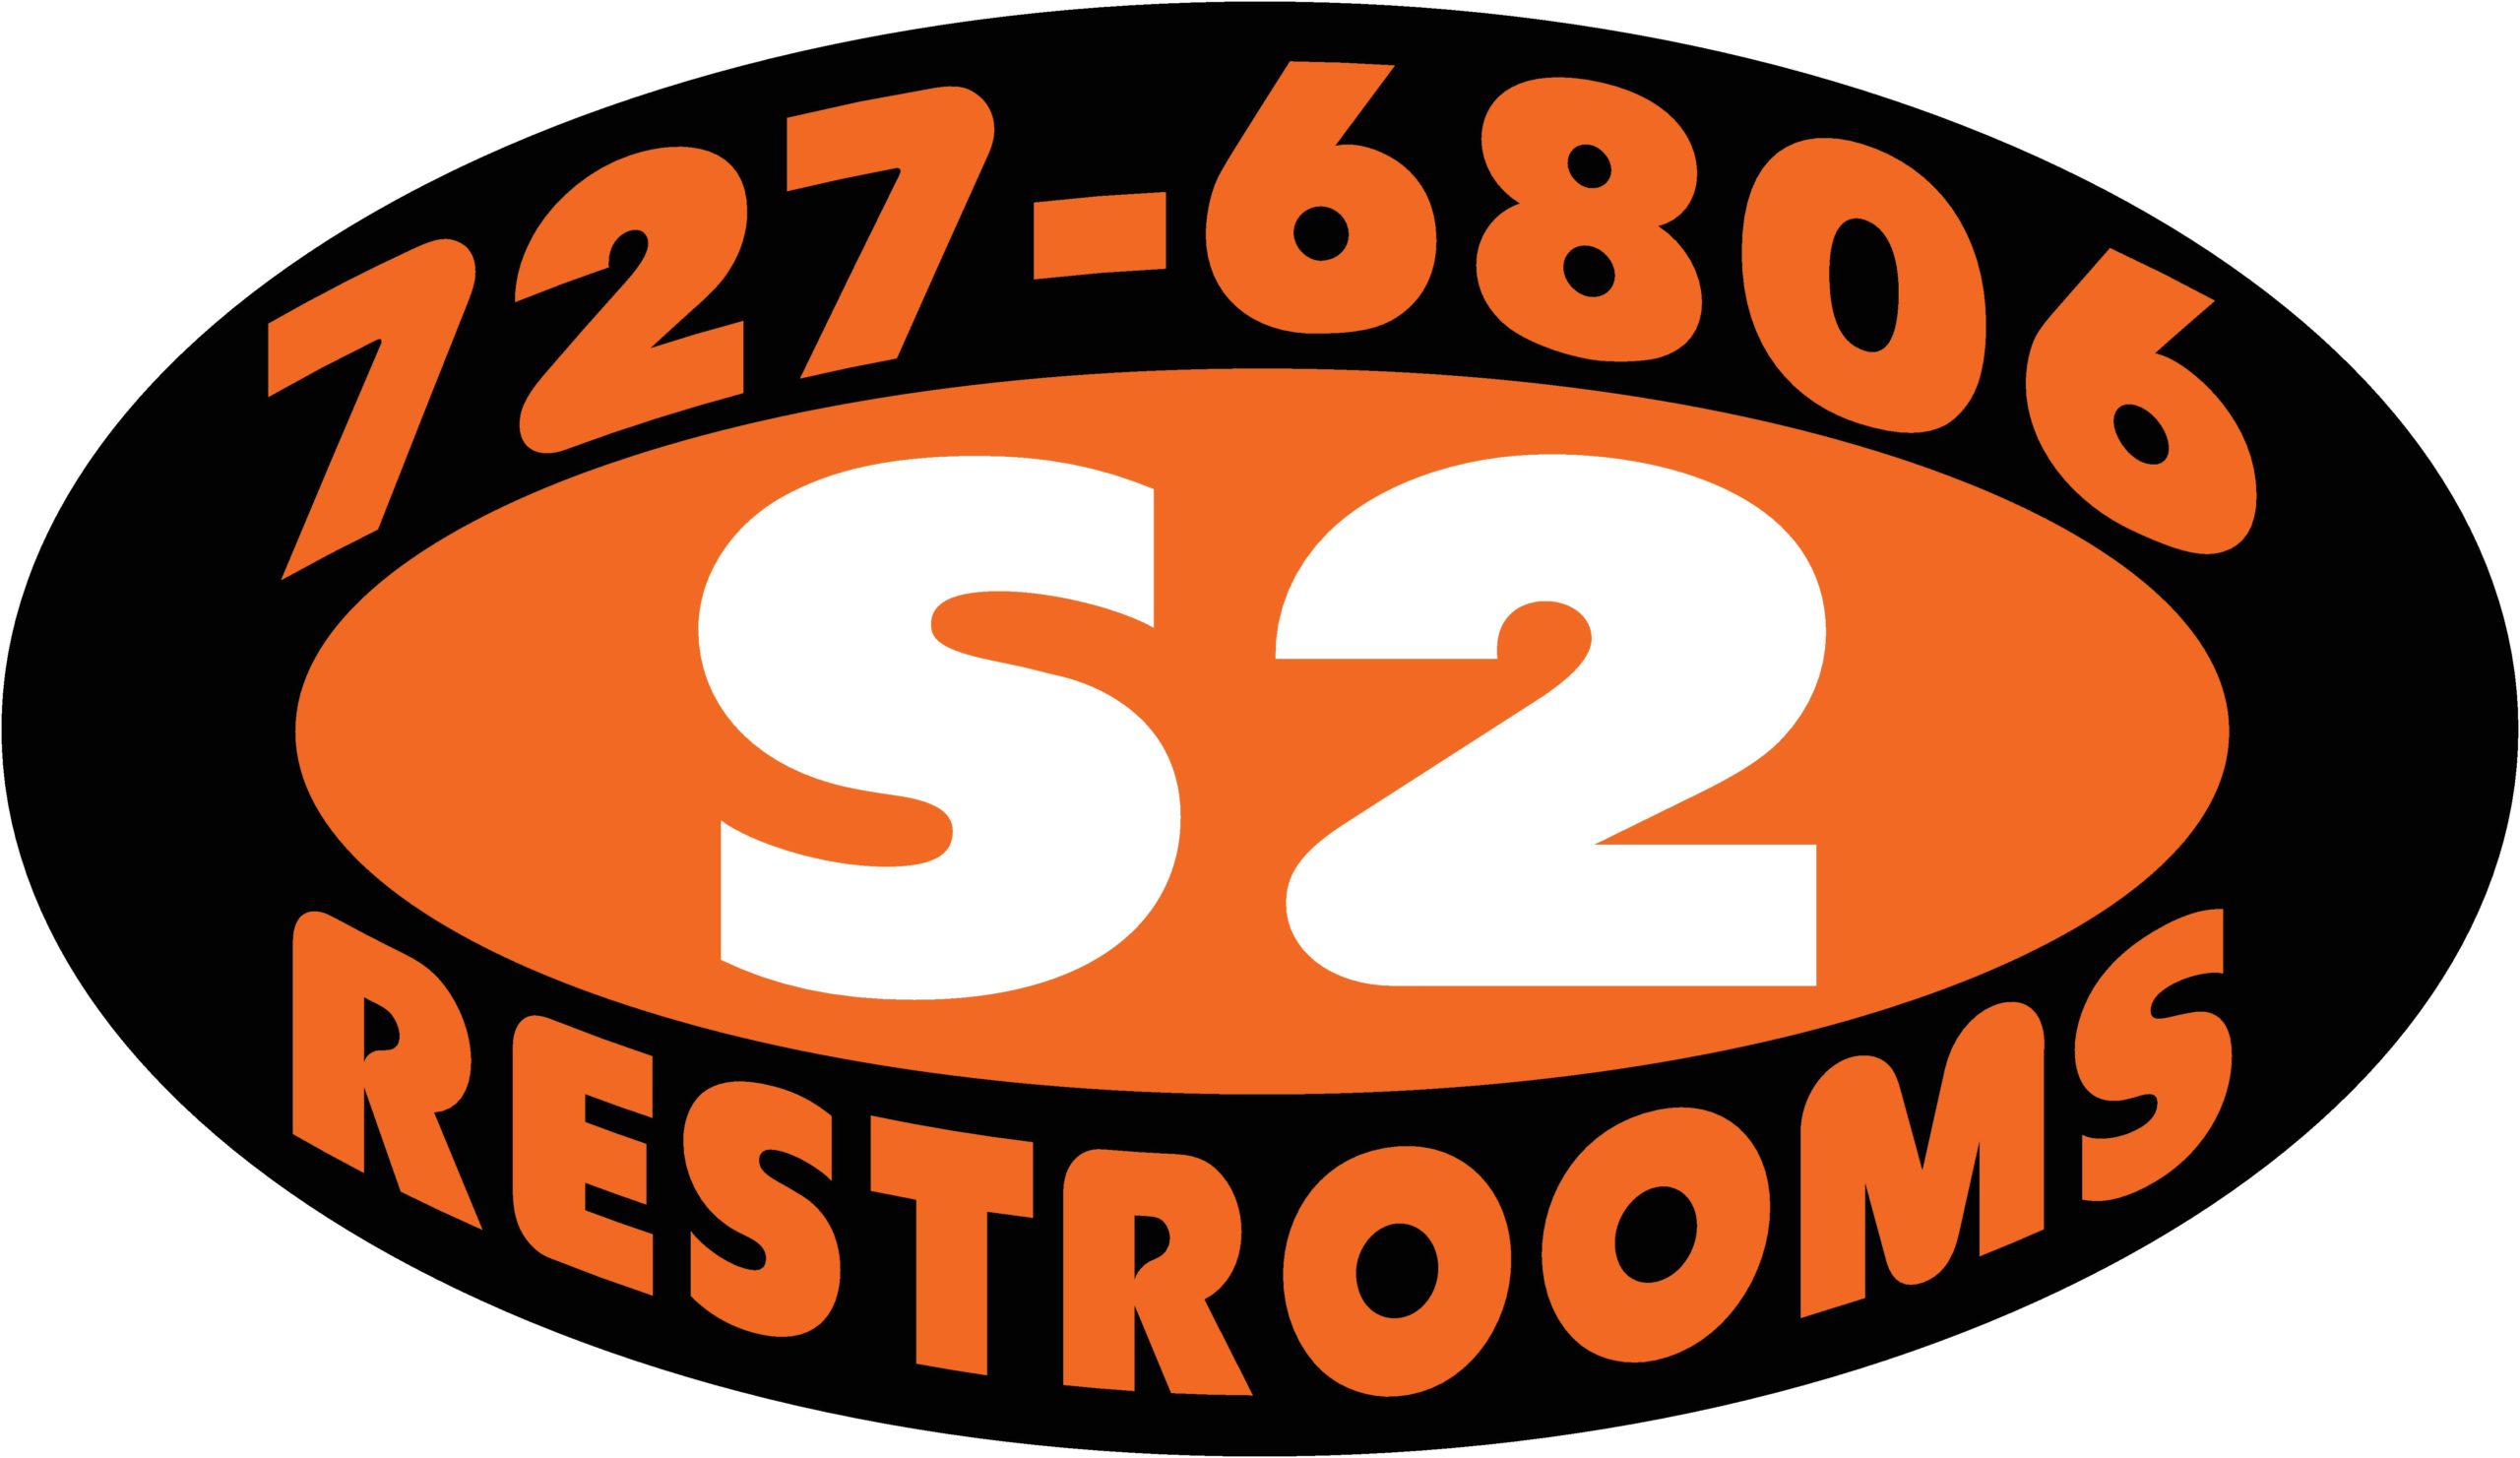 S2 Restroom logo